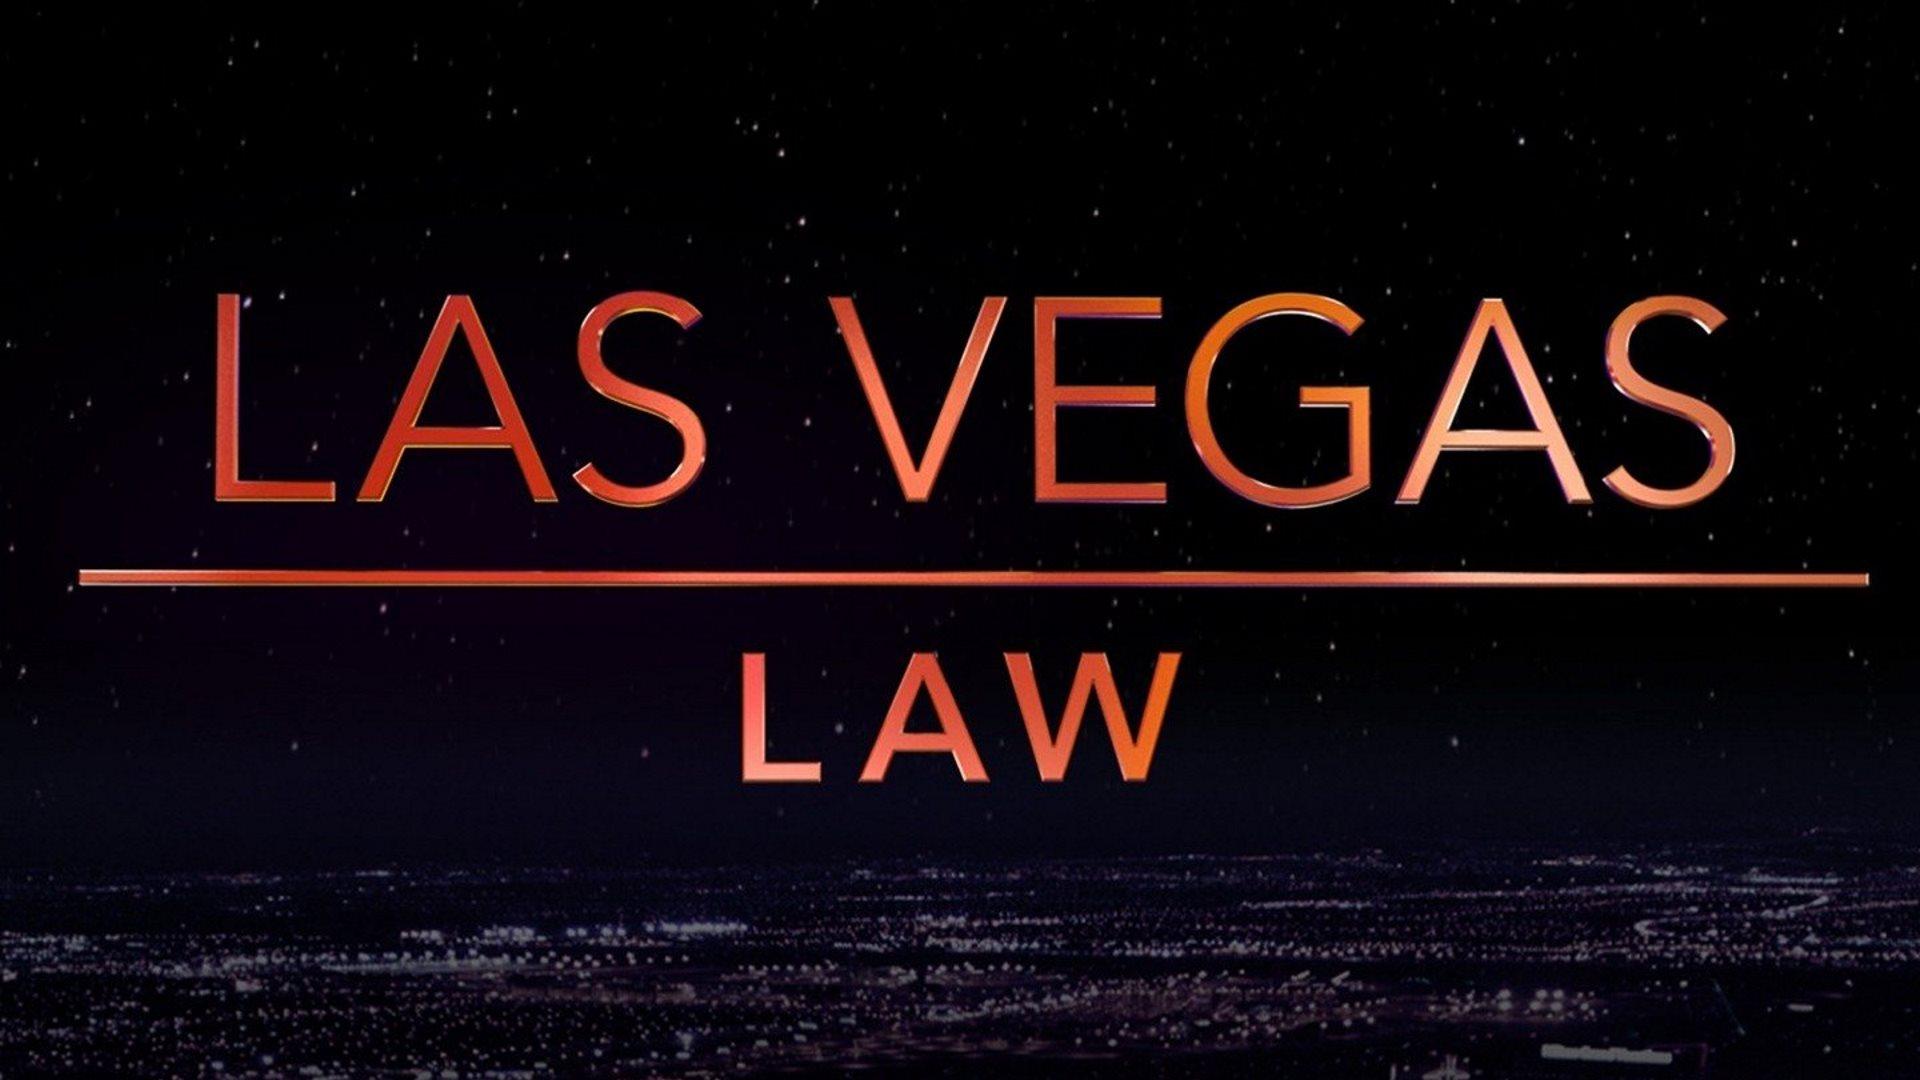 Las Vegas Law (2016)